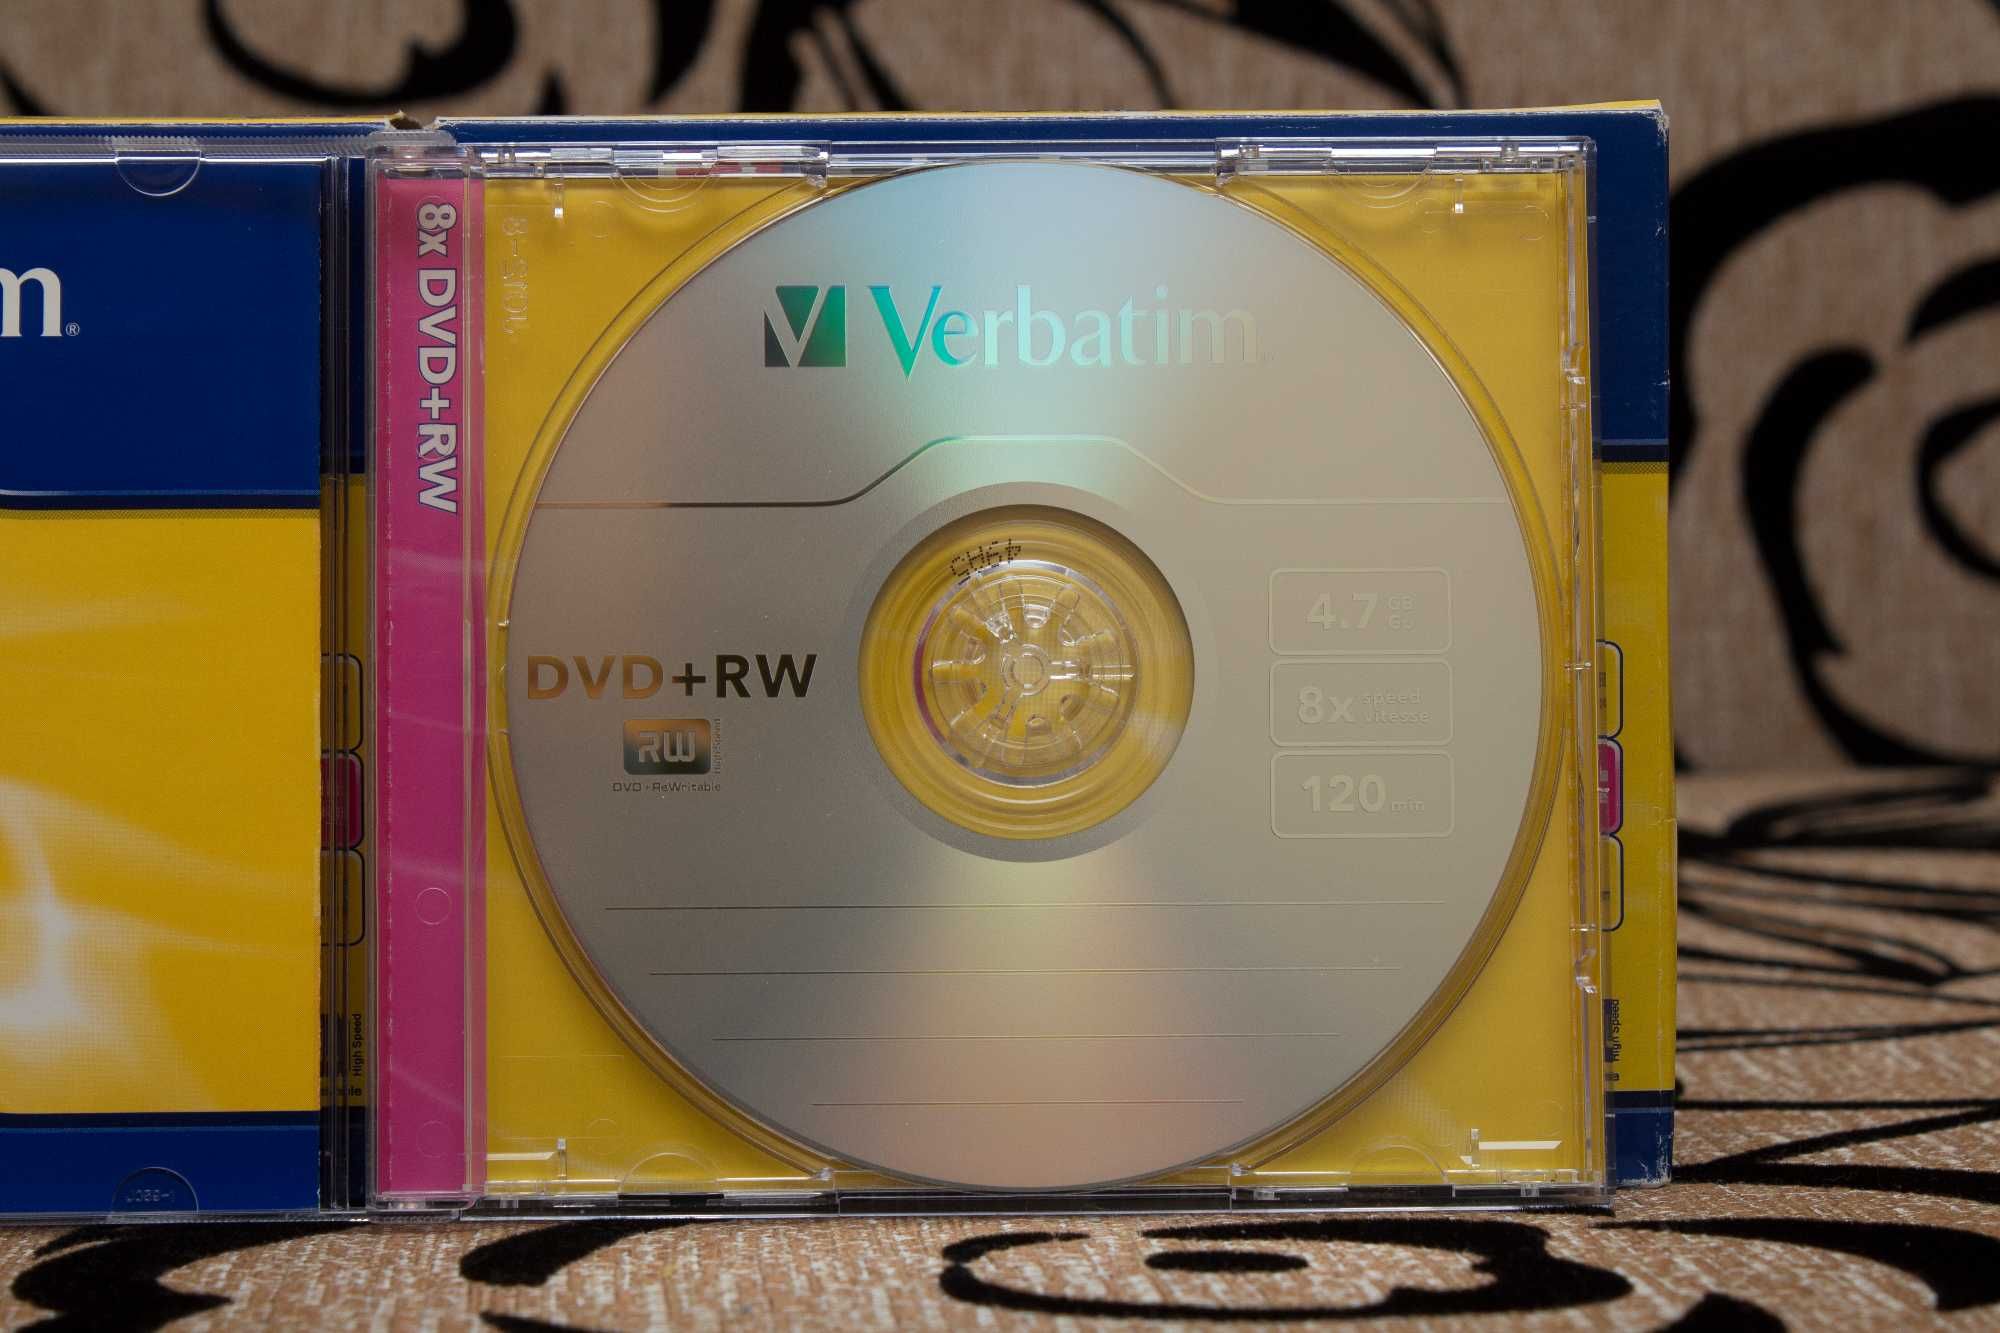 Verbatim DVD+RW 8 X